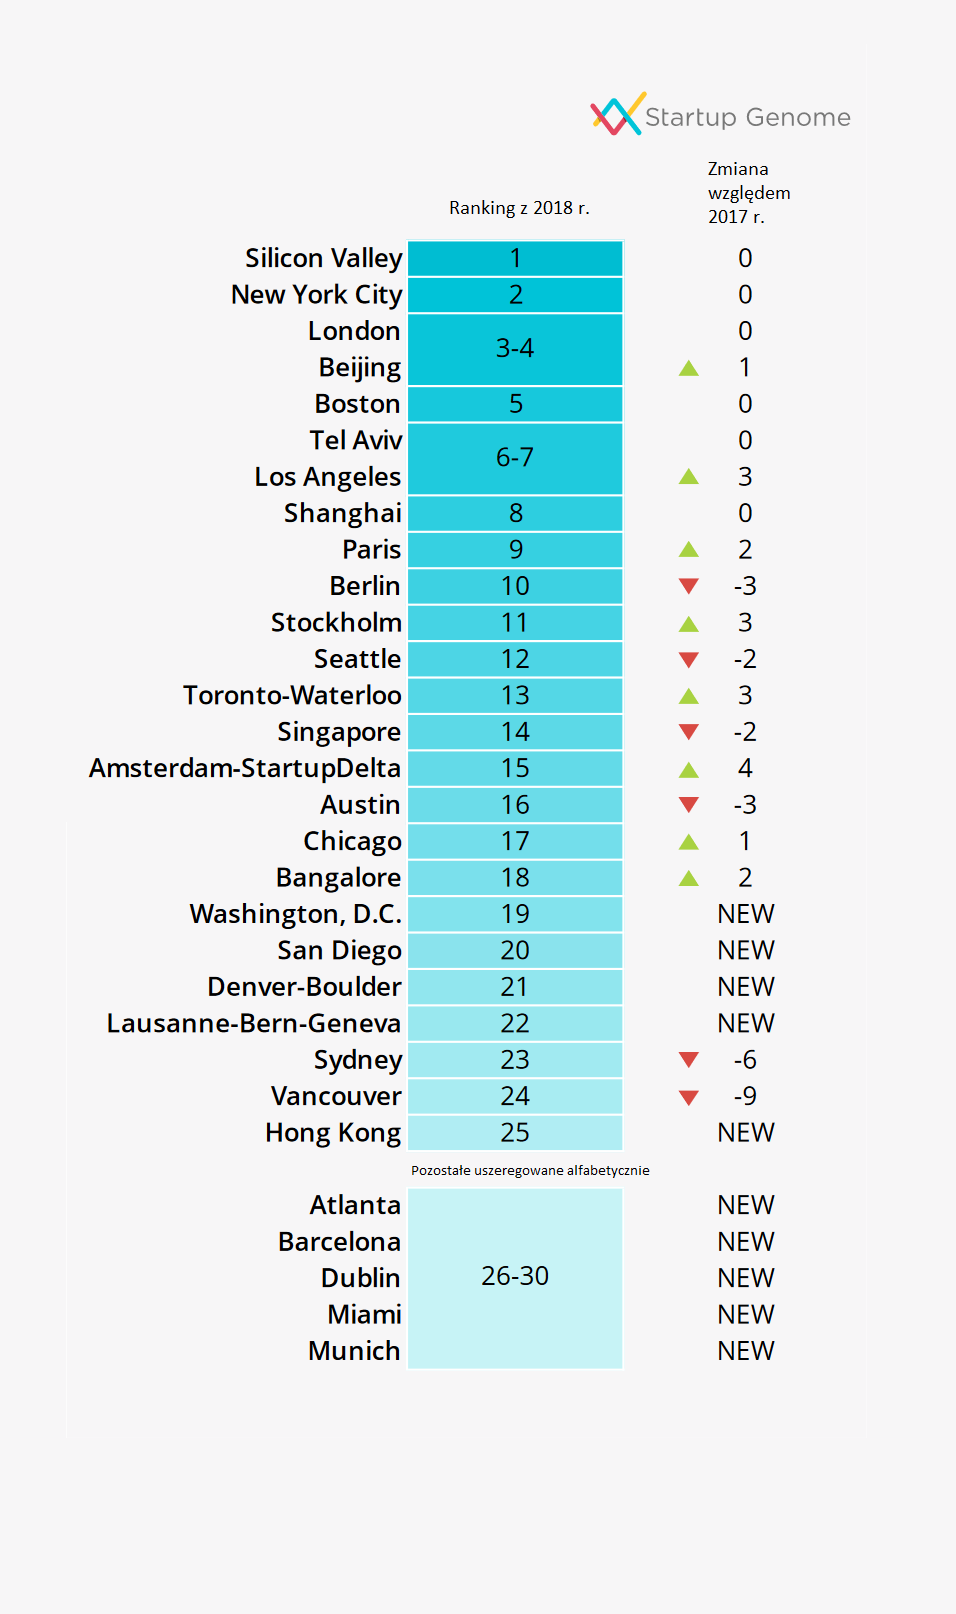 Tabela reprezentuje ranking z 2018 r. 30 miejsc, tzw. ekosystemów start-upowych. Ranking pokazuje gdzie start-up może liczyć na finansowanie i przyjazne środowisko do rozwoju. (źródło: 2019 Global Start-up Ecosystem Report (GSER)/startupgenome.com)